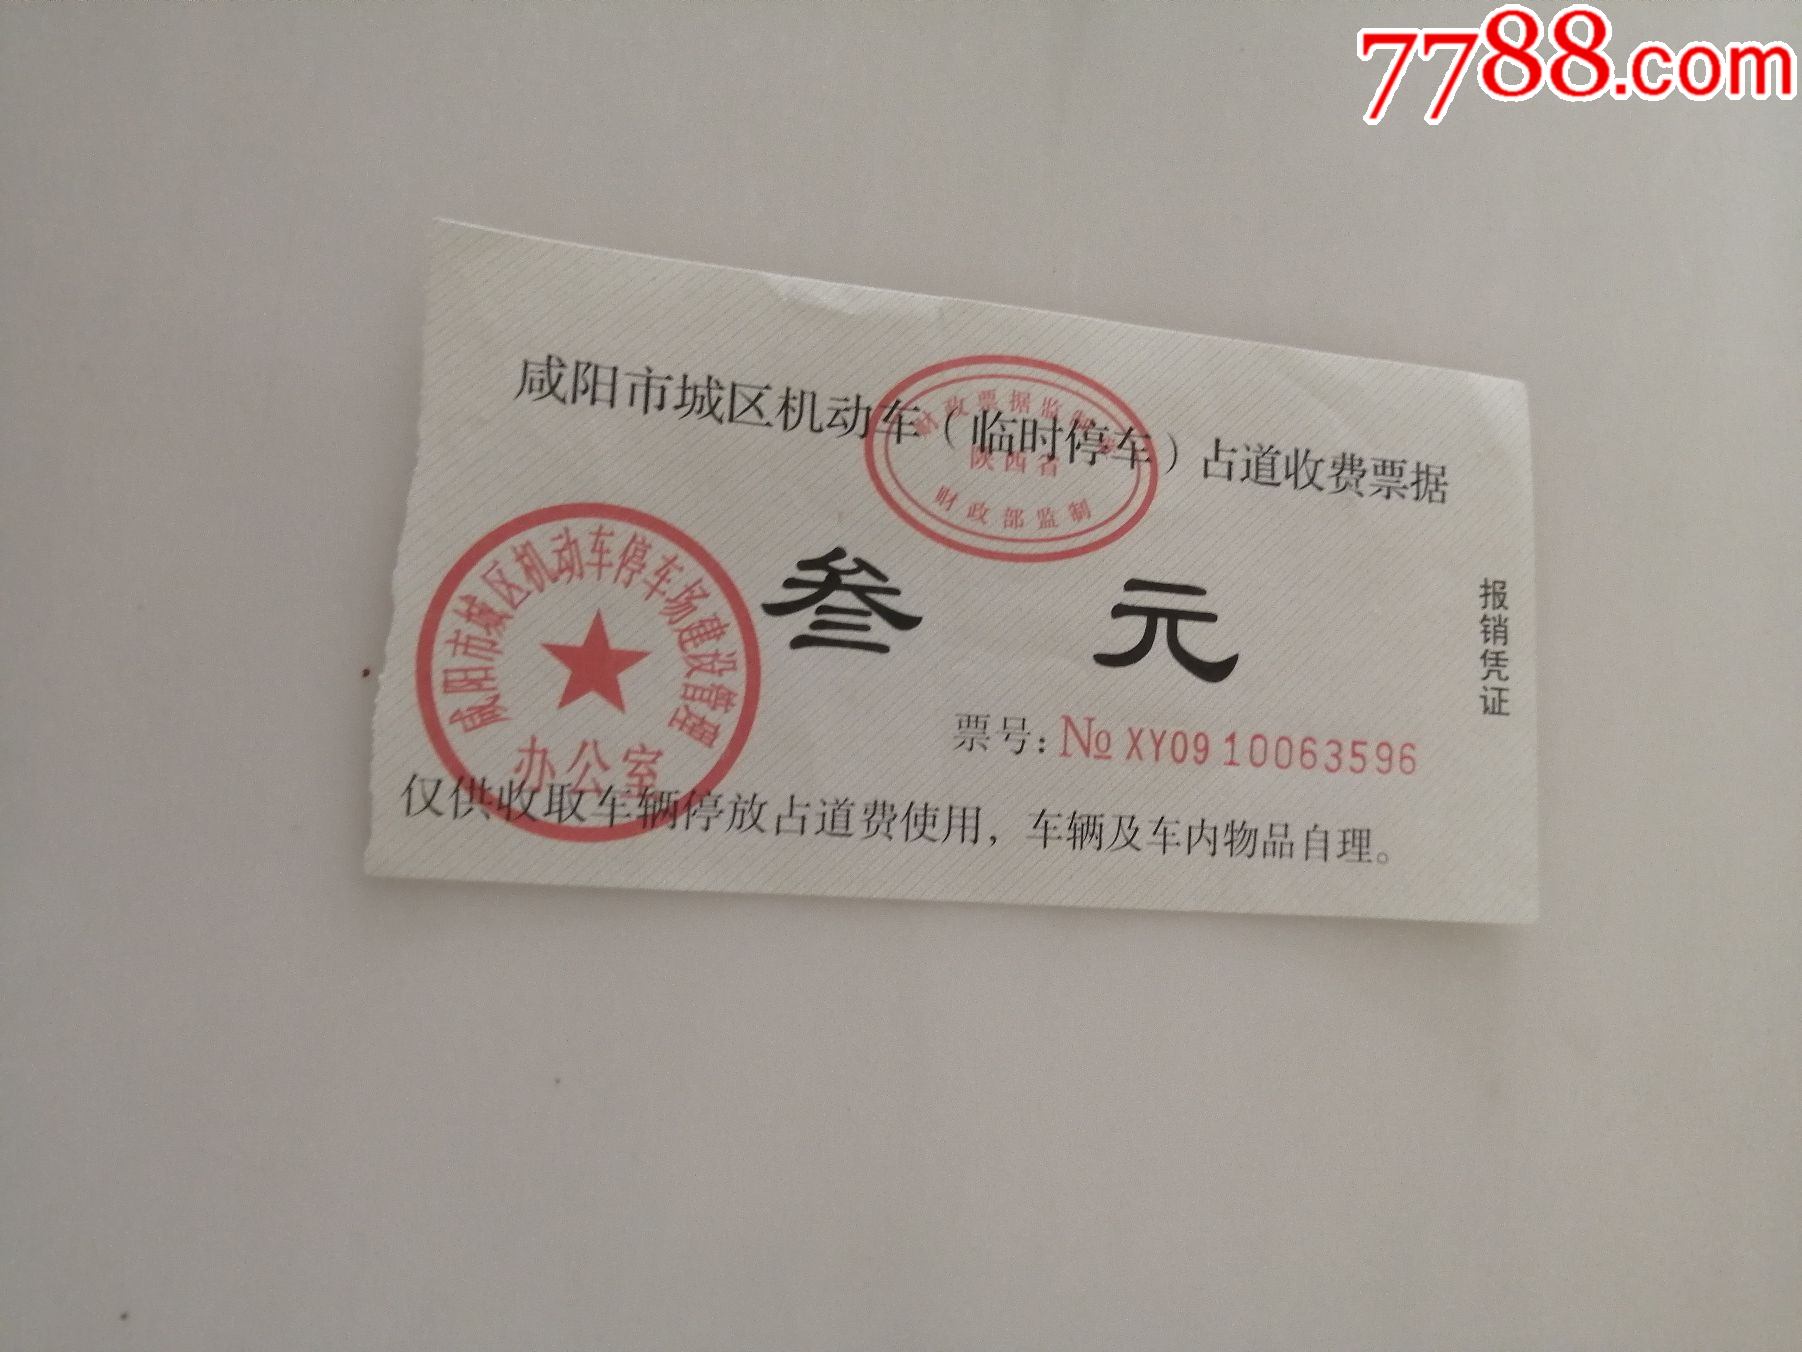 咸阳市临时停车收费票据-价格:3元-se81641920-其他交通票-零售-7788